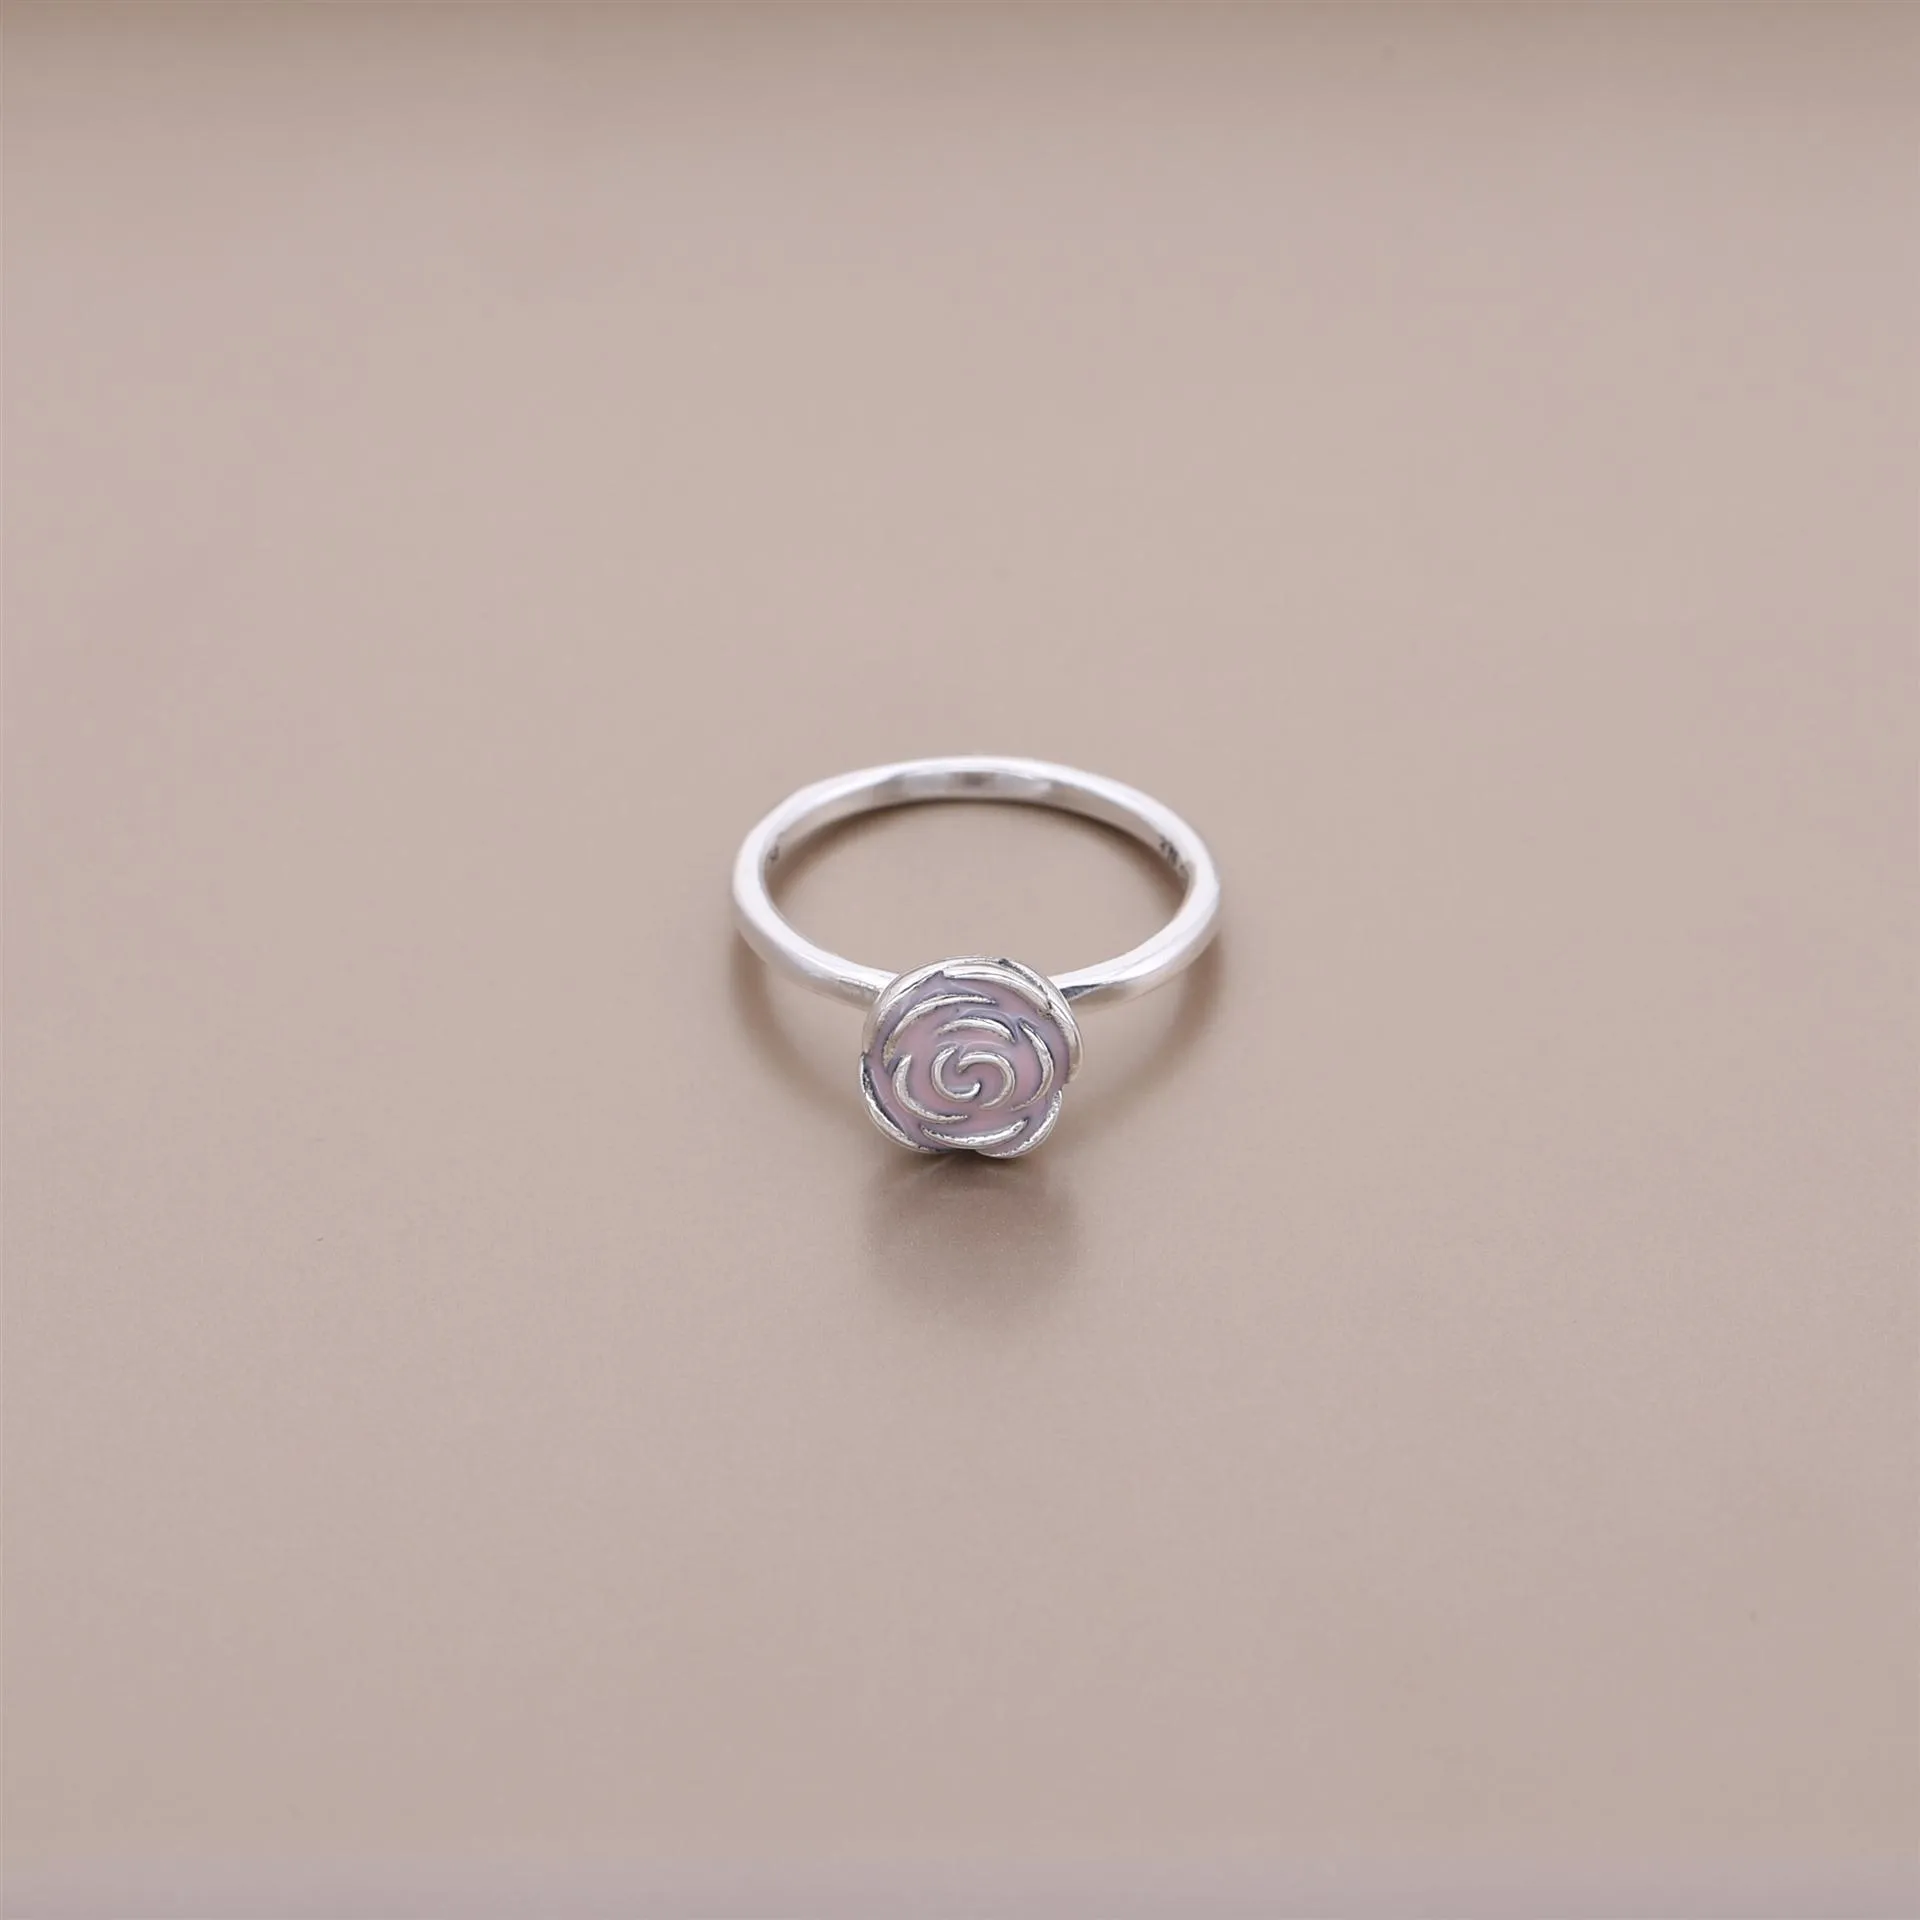 Inel cu trandafir, din argint 925 şi email roz - 190905EN40 - In